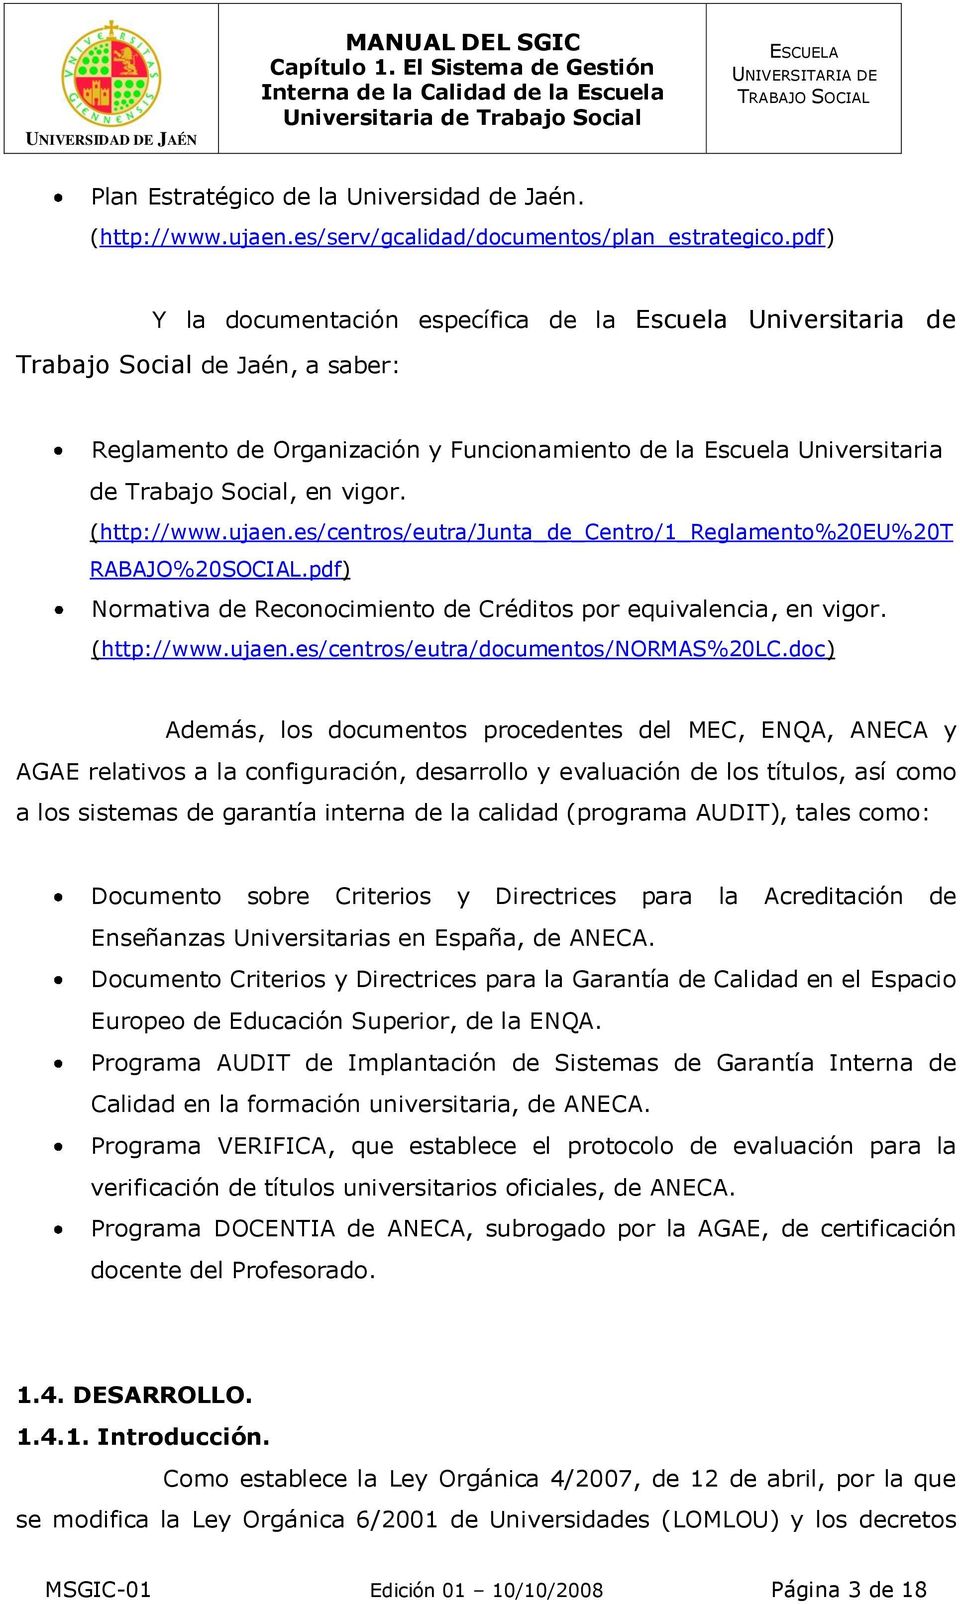 (http://www.ujaen.es/centros/eutra/junta_de_centro/1_reglamento%20eu%20t RABAJO%20SOCIAL.pdf) Normativa de Reconocimiento de Créditos por equivalencia, en vigor. (http://www.ujaen.es/centros/eutra/documentos/normas%20lc.